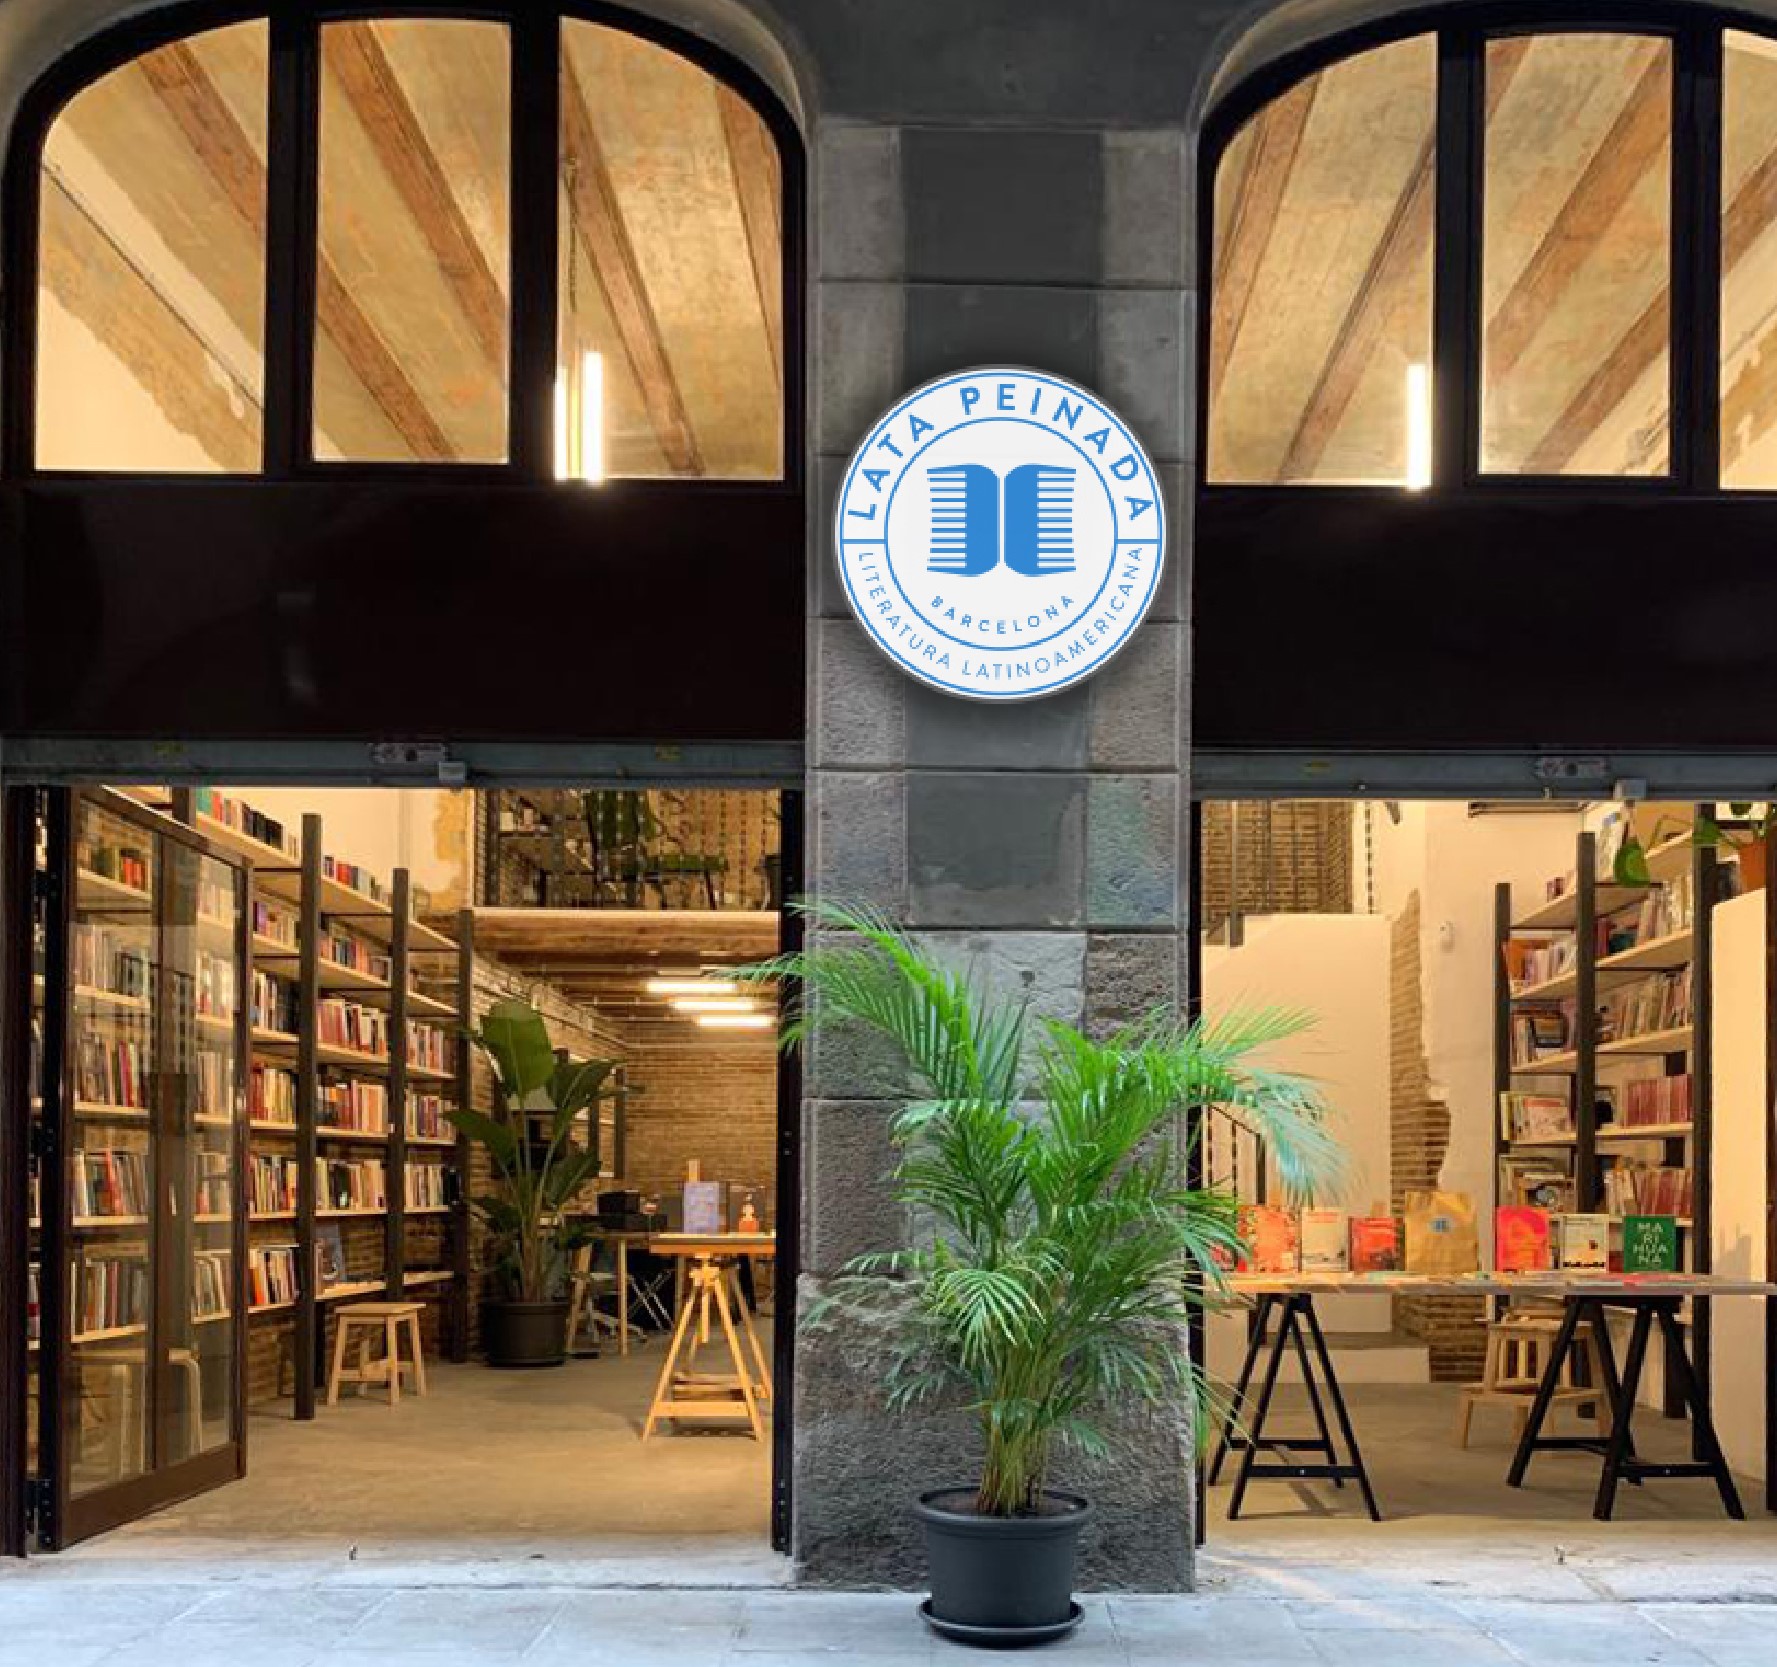 Lata Peinada: La primer librería latinoamericana en Barcelona